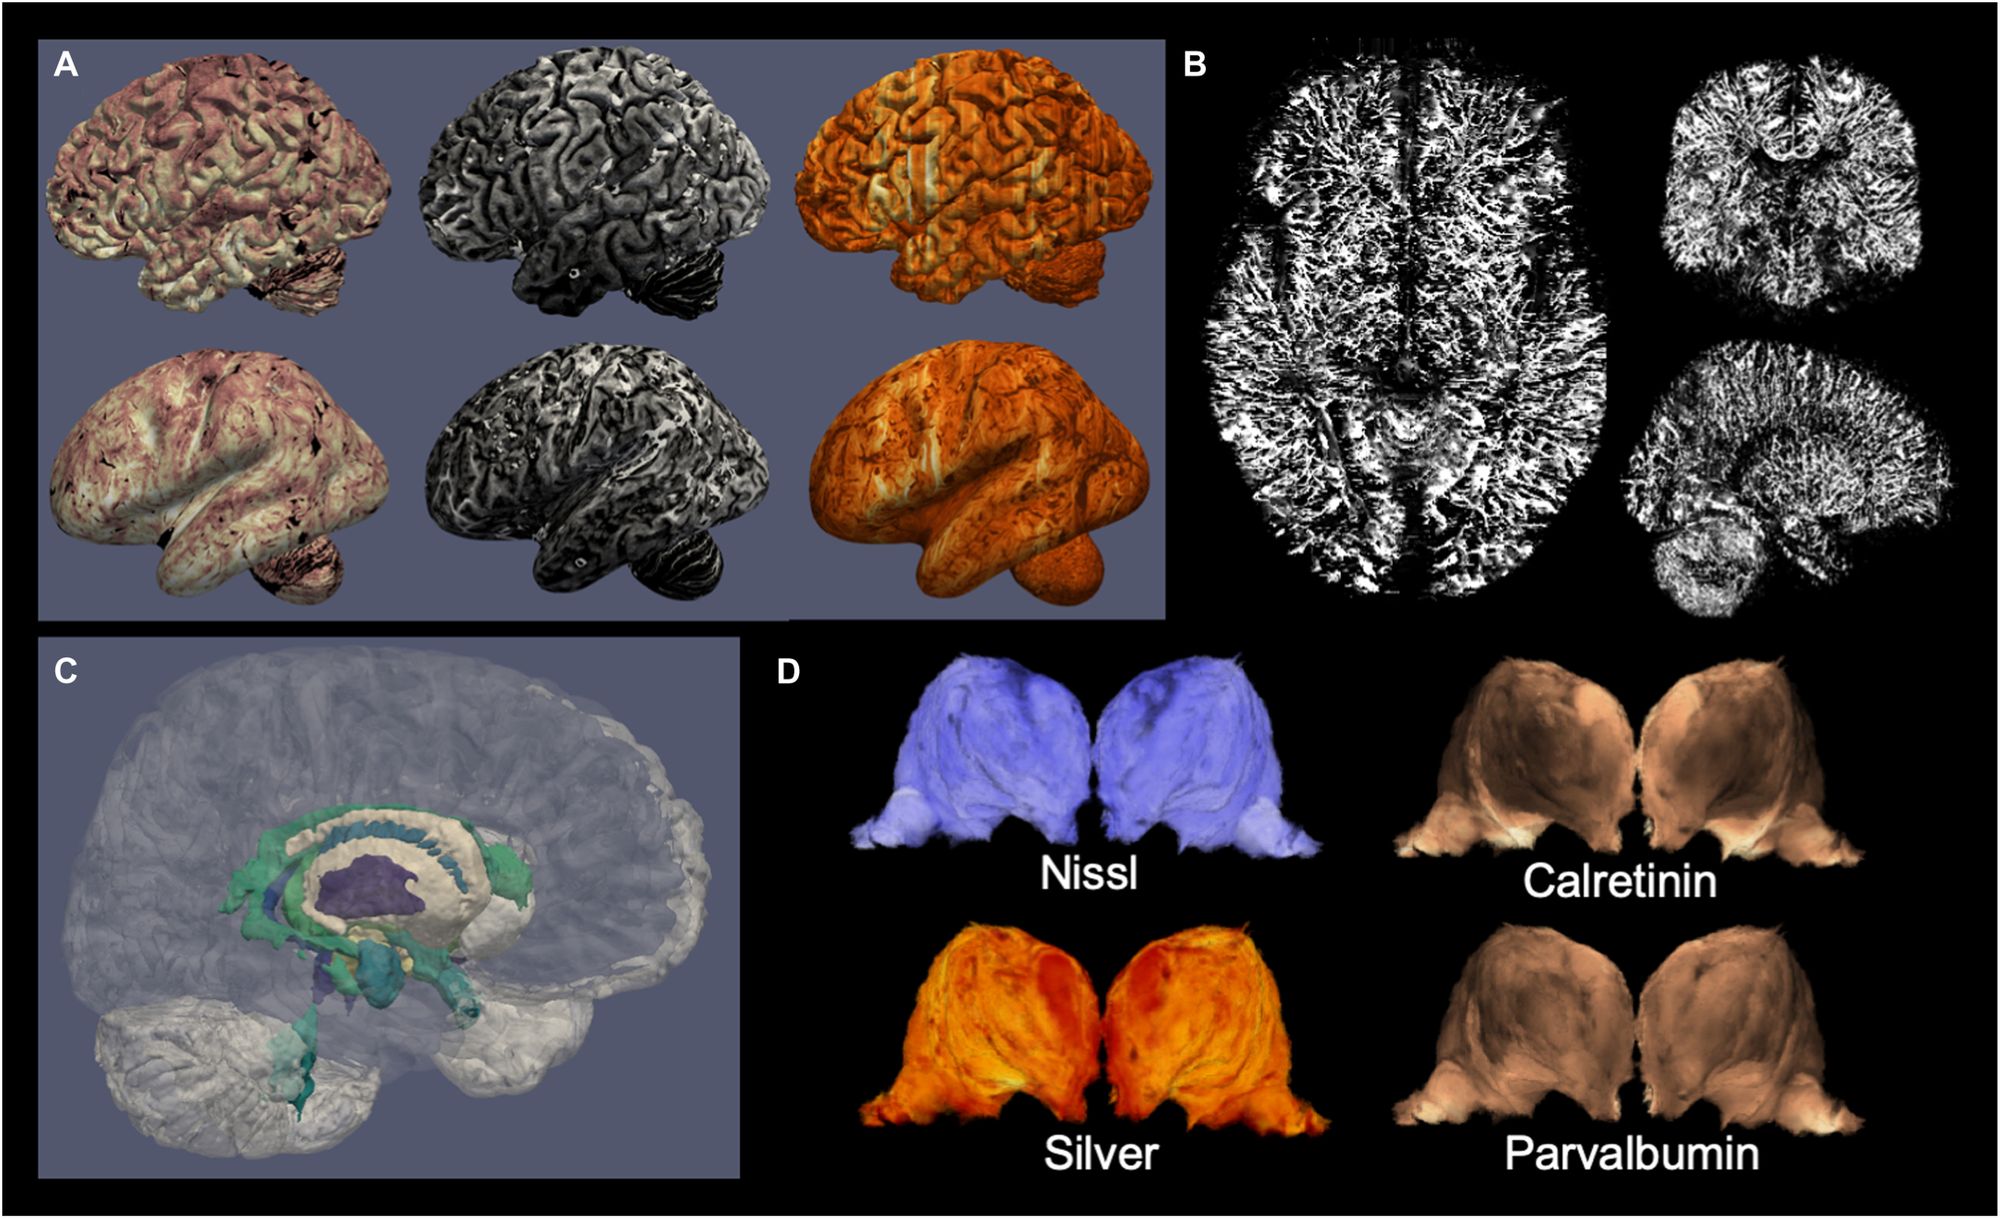 Prohlédněte si nejdetailnější 3D rekonstrukci lidského mozku